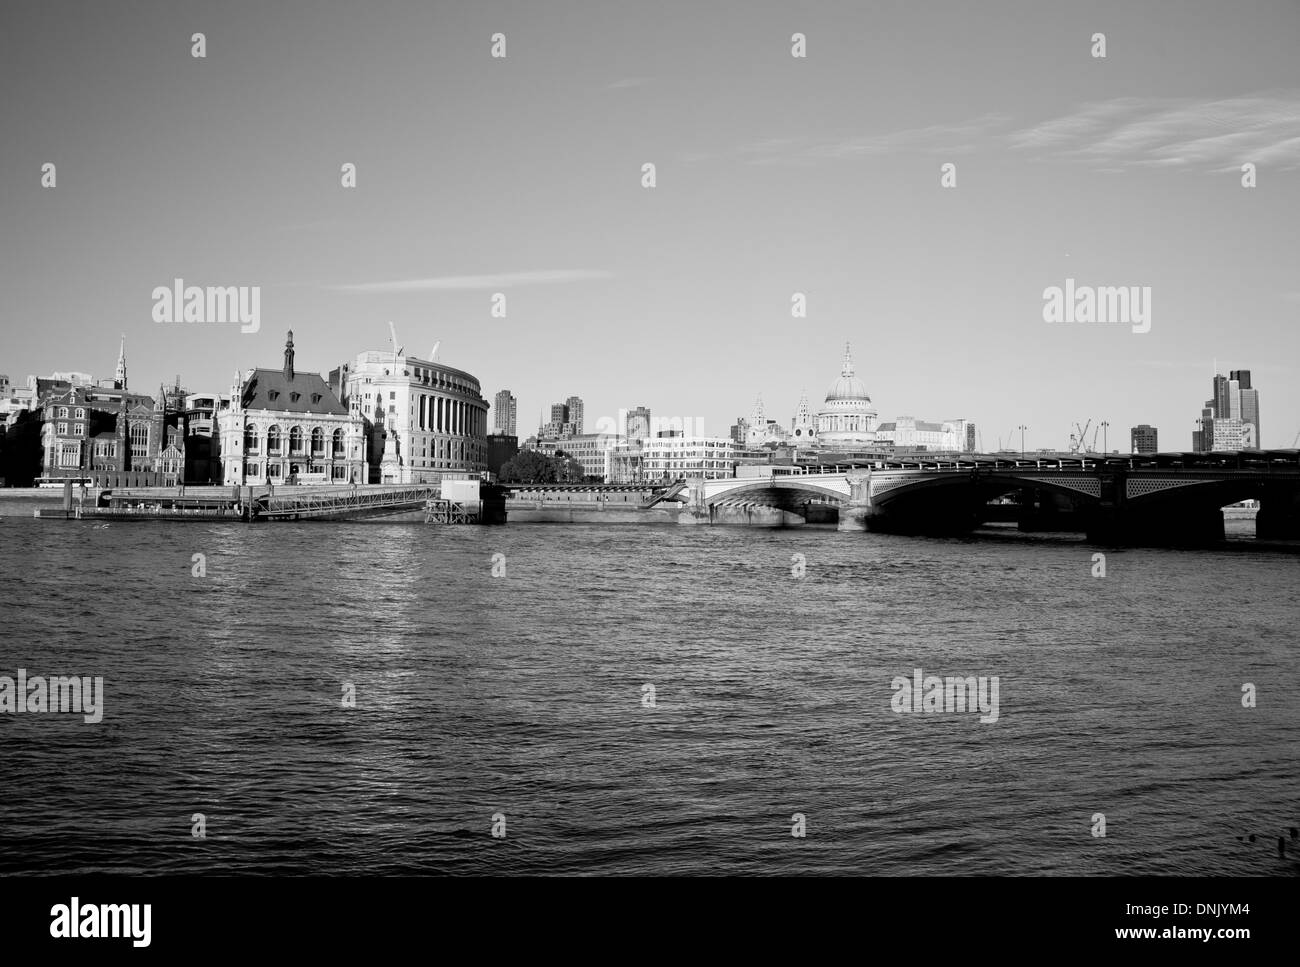 Avis de Blackfriars Bridge avec Tamise et City, Londres, Angleterre, Royaume-Uni. Banque D'Images